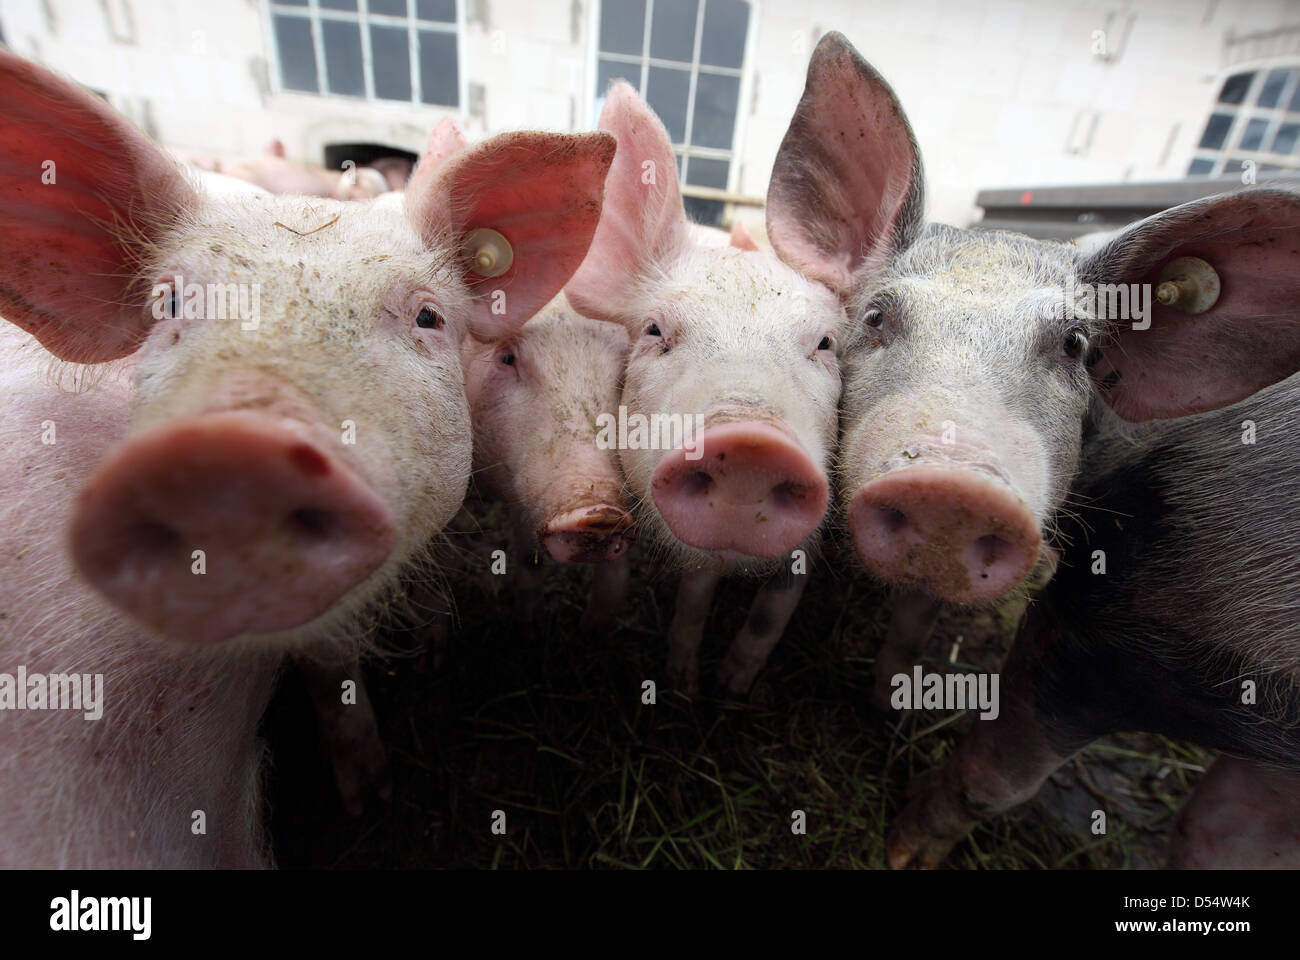 Aldea resplandeciente, Alemania, Biofleischproduktion, Piglet mira con curiosidad el visor Foto de stock